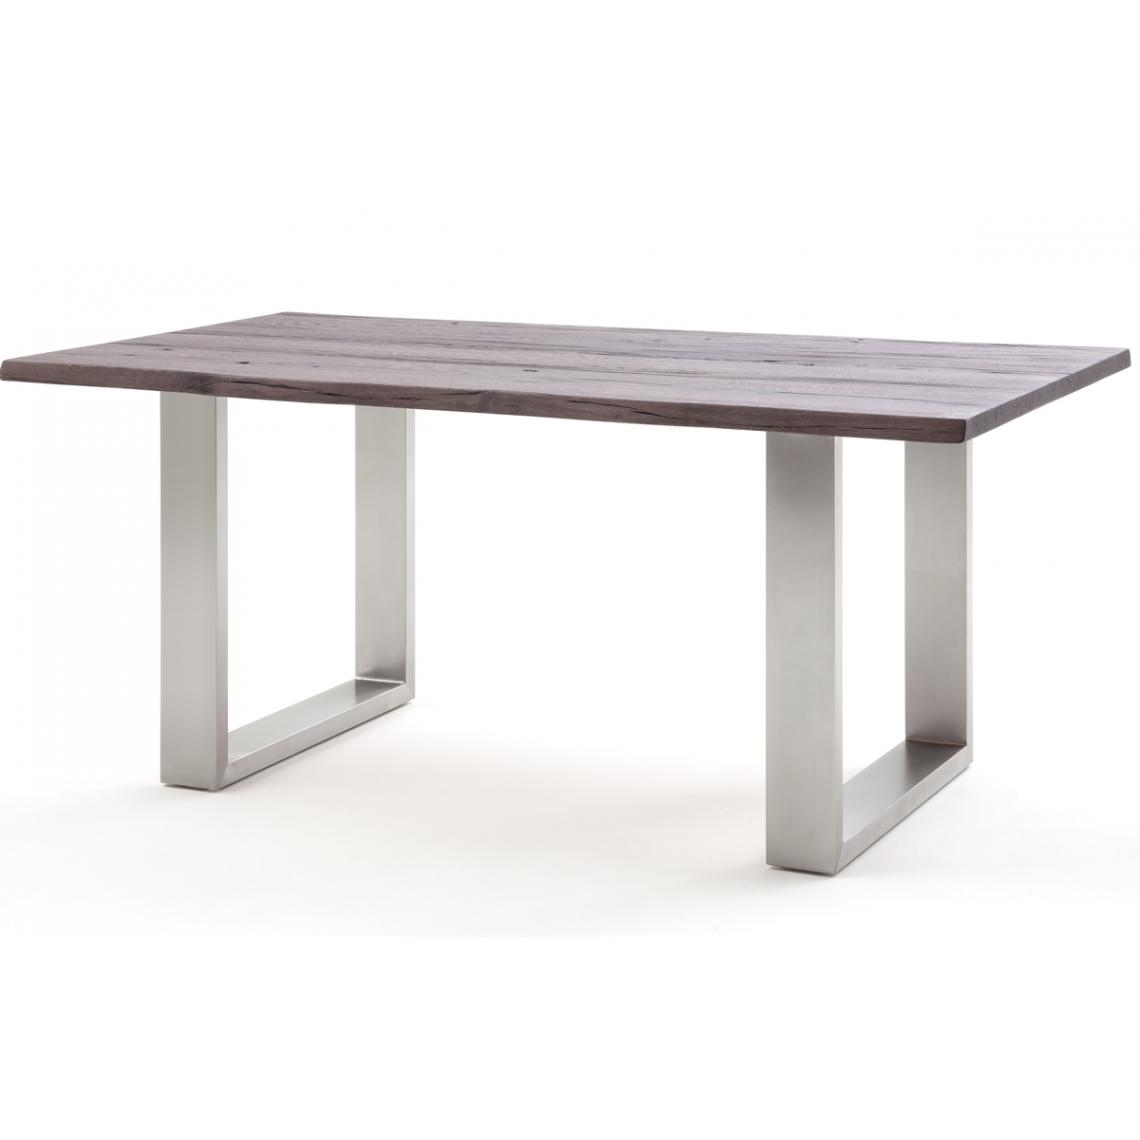 Pegane - Table à manger / table diner en chêne massif teinte vieilli - L.220 x H.77 x P.100 cm -PEGANE- - Tables à manger